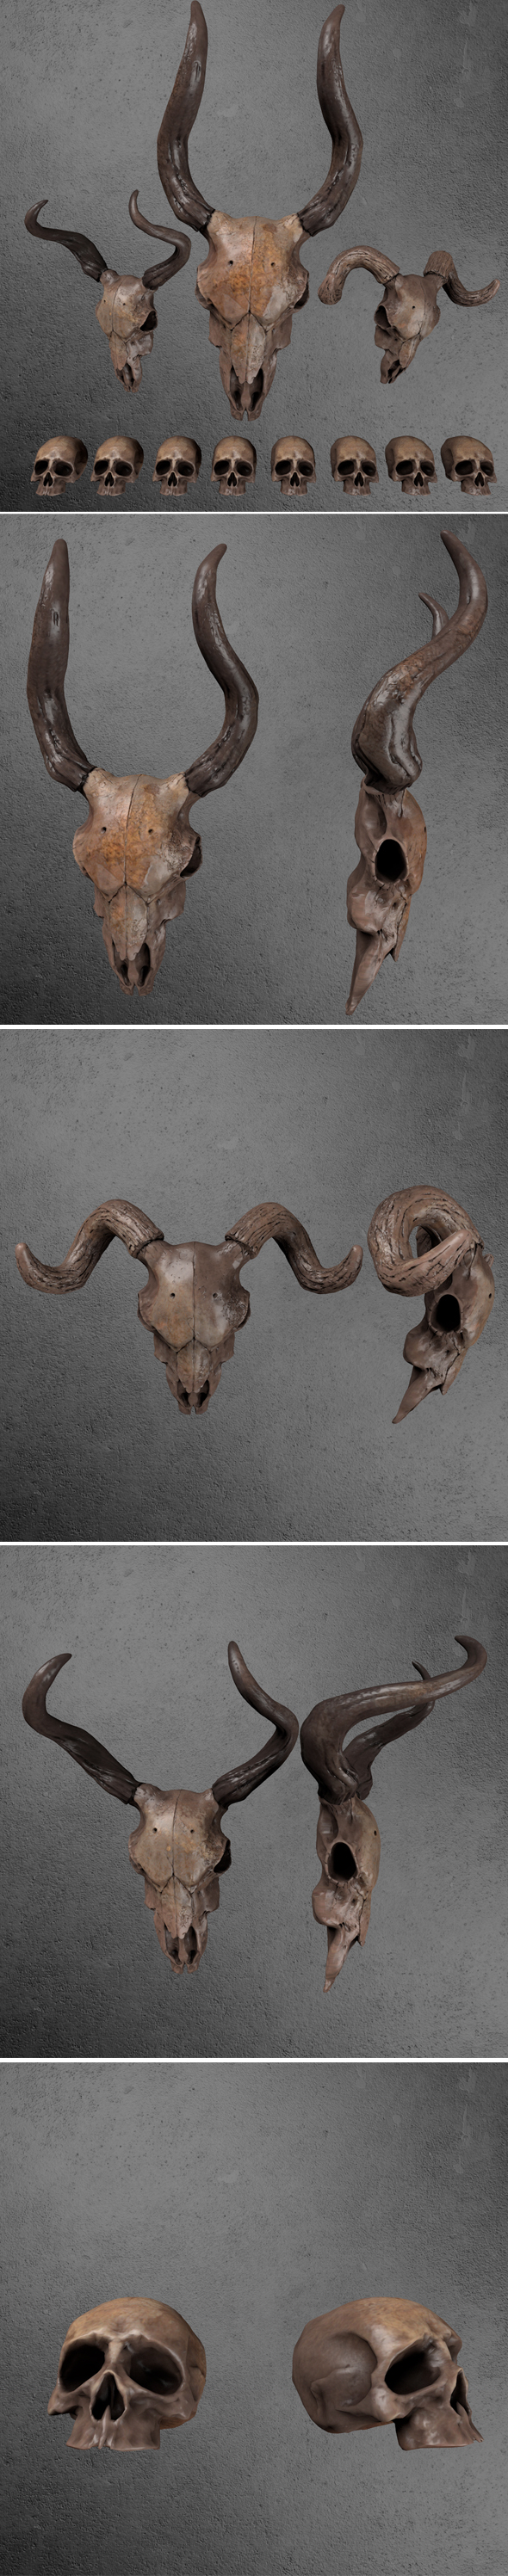 Skull GoatPACK - 3Docean 33923255